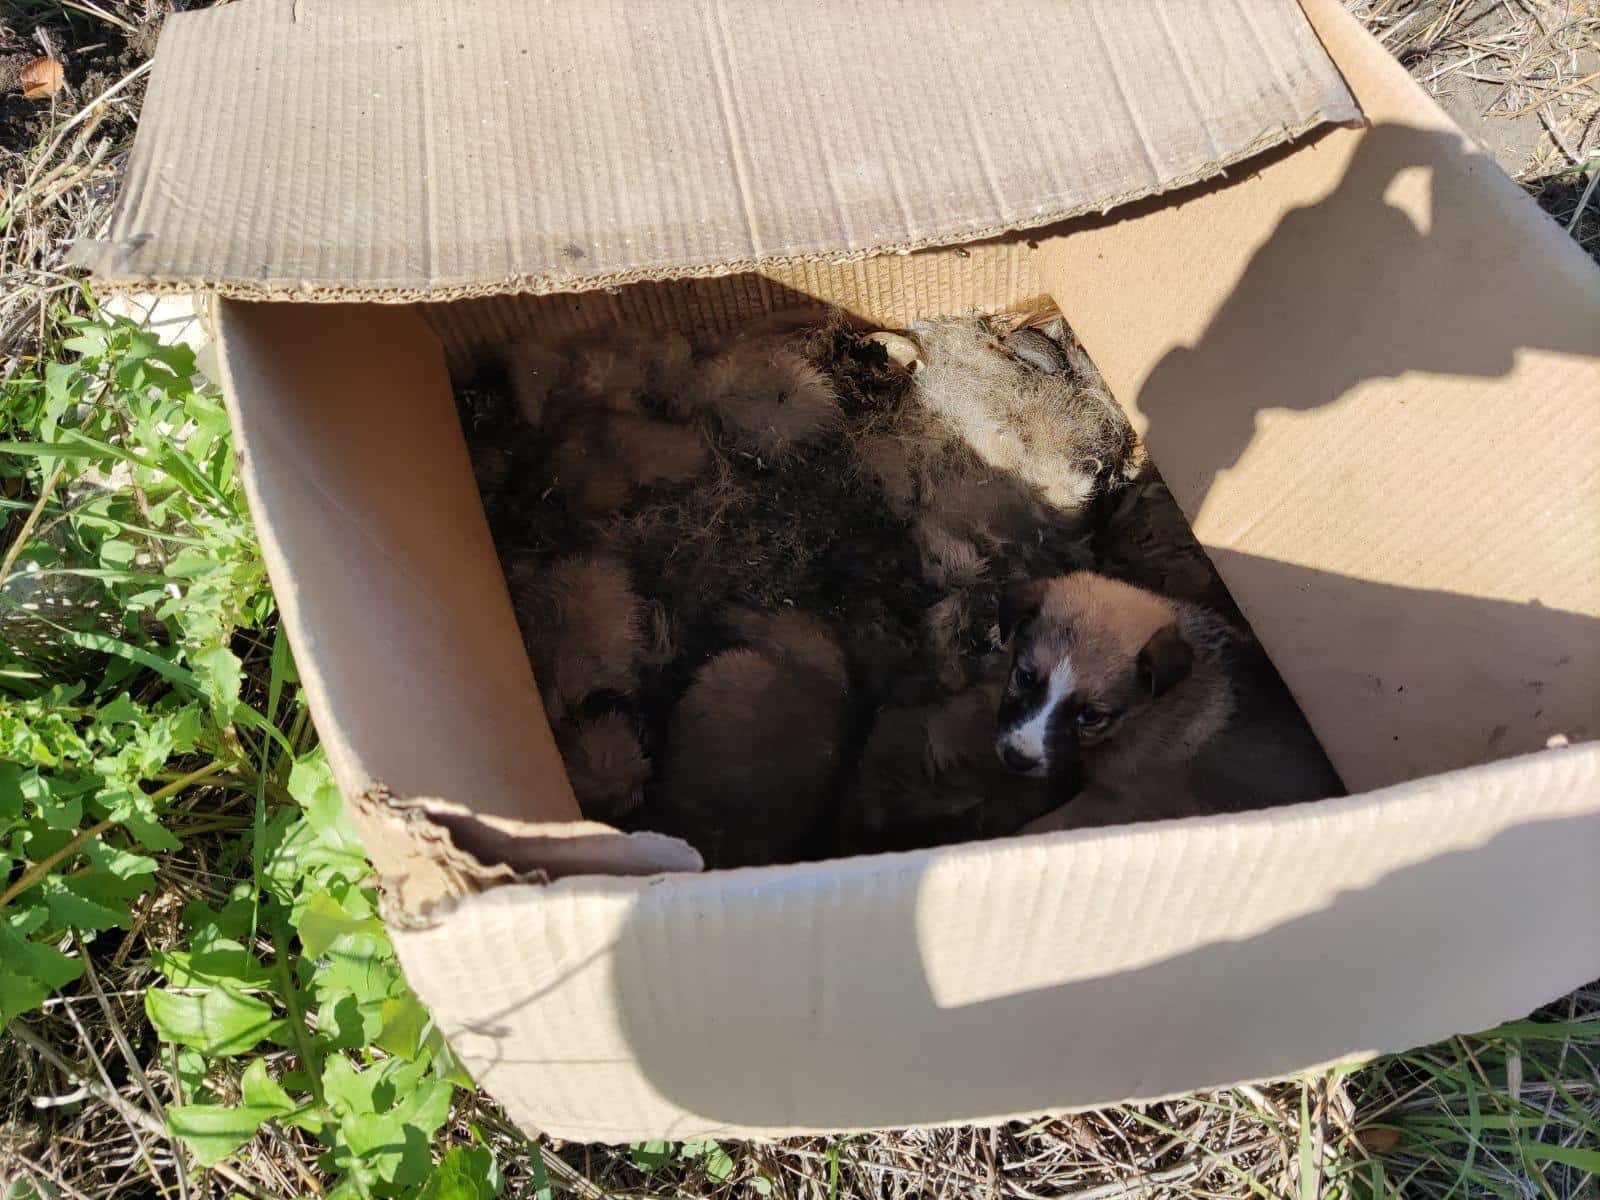 Orrore a Caltanissetta, muore intera cucciolata abbandonata in un cartone sotto il sole